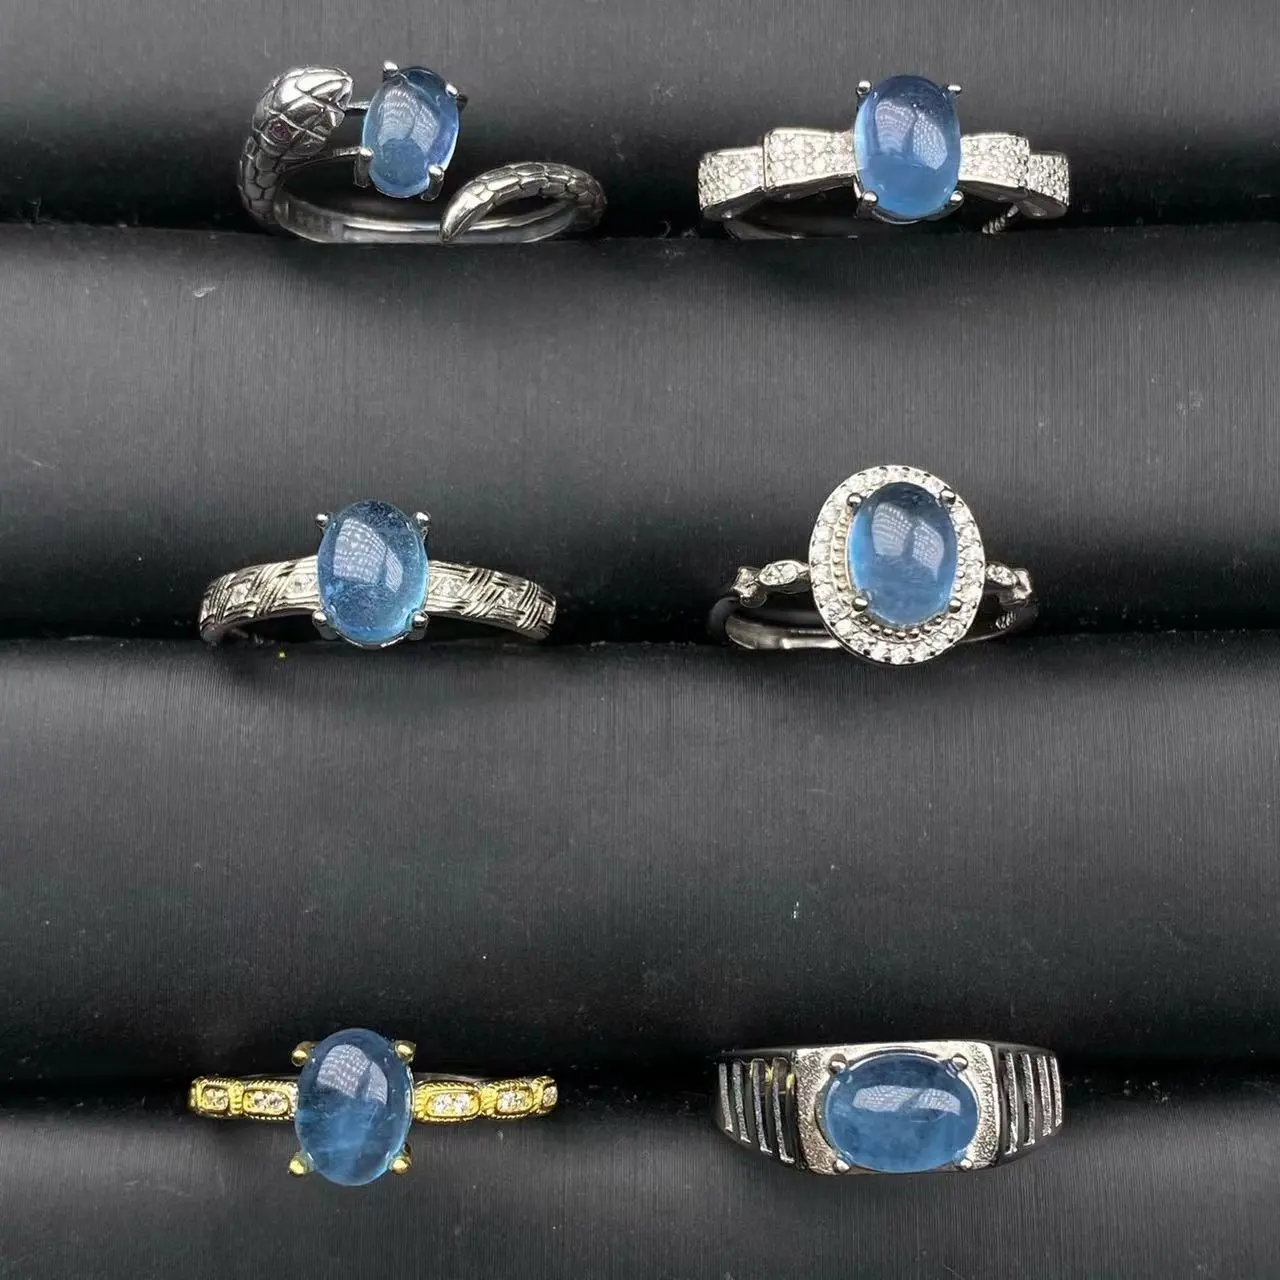 Precio al por mayor, joyería de moda, piedra preciosa aguamarina natural hecha a mano, anillos de banda de serpiente de plata de ley 925 para mujer